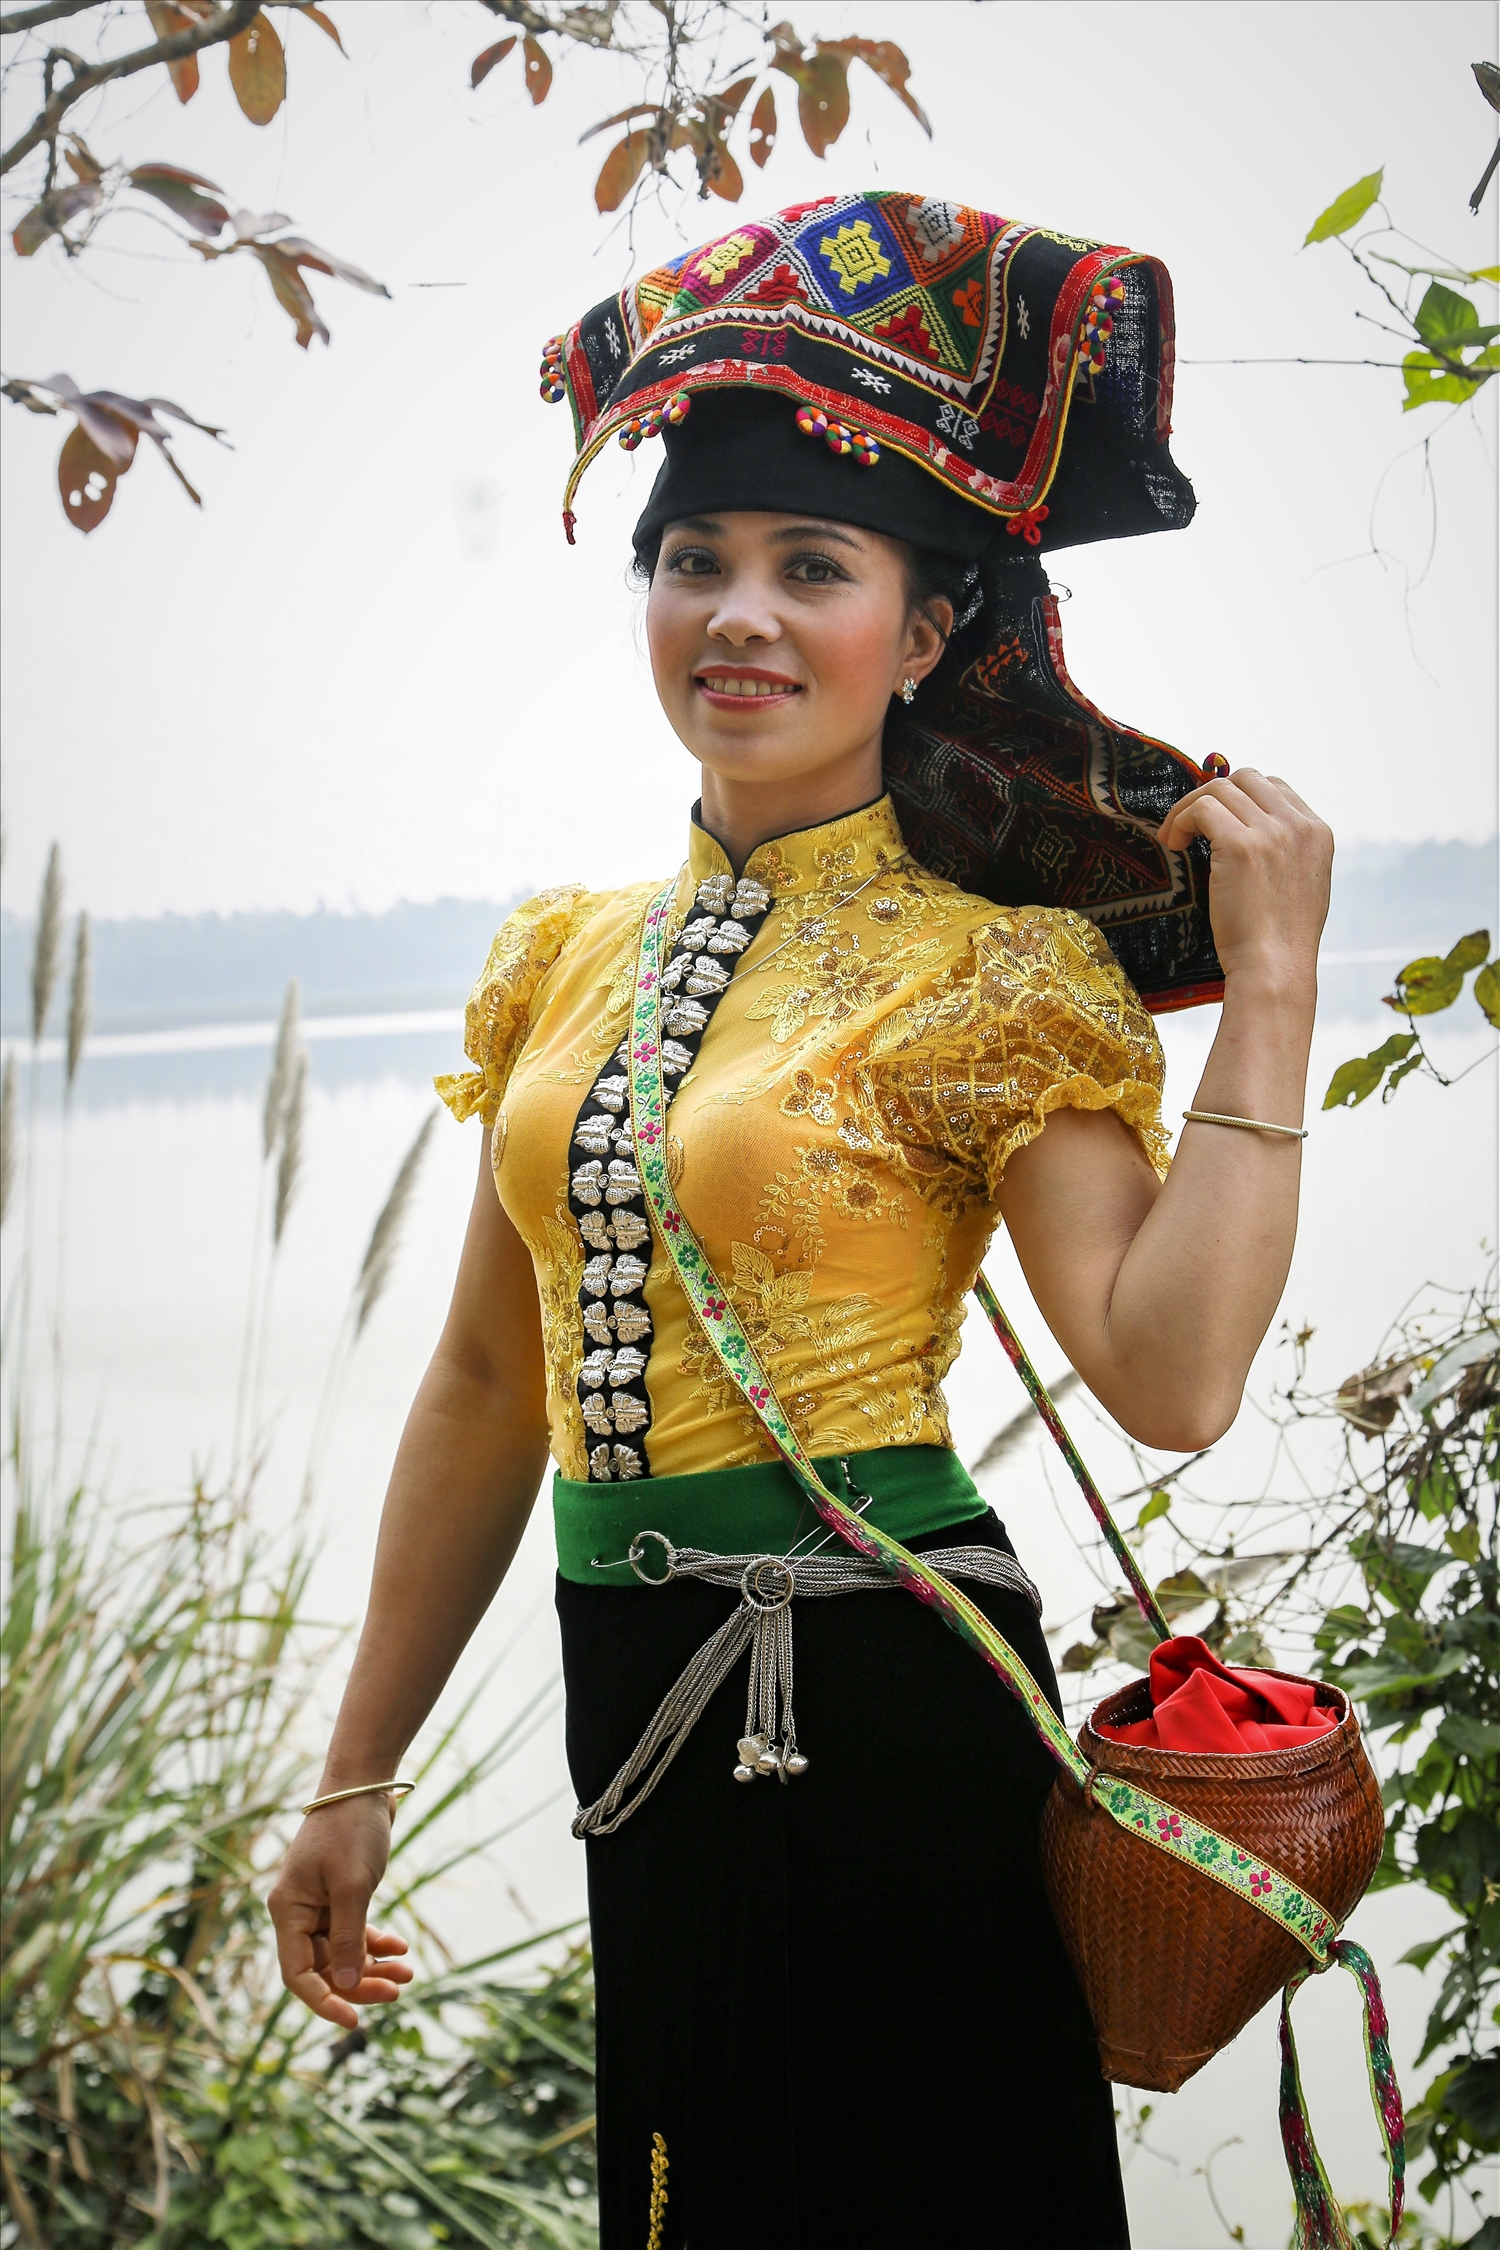 Nét văn hóa đặc trưng của Dân tộc Thái